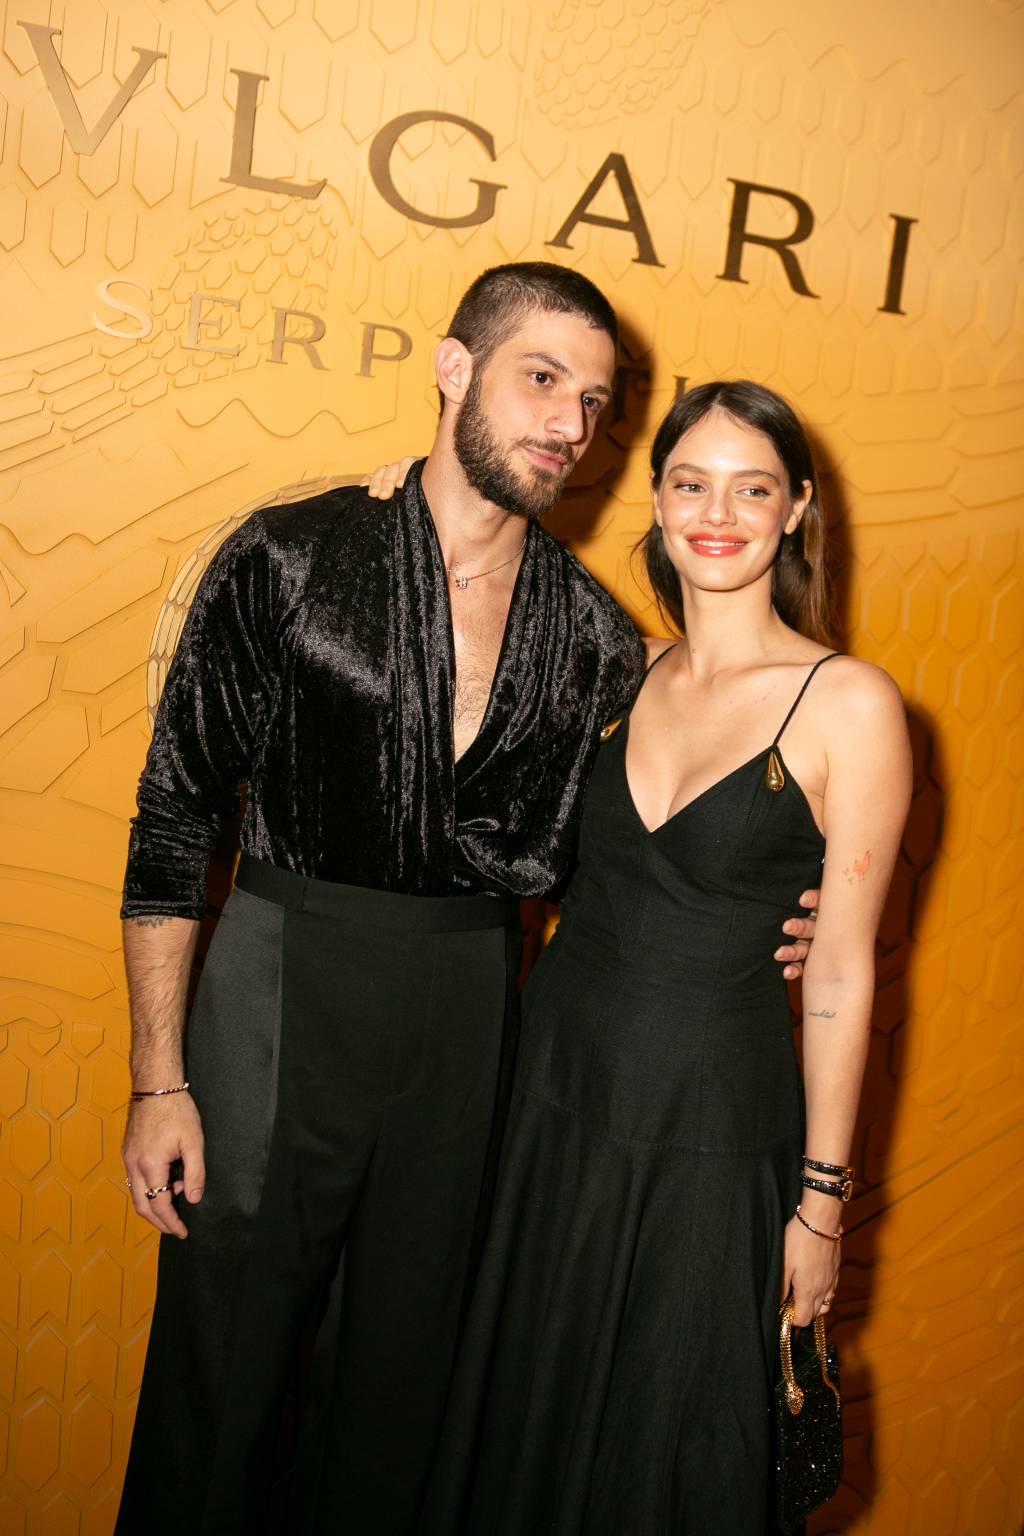 Casal posa em frente a parede laranja com a marca Bvlgari. Vestem peças pretas.